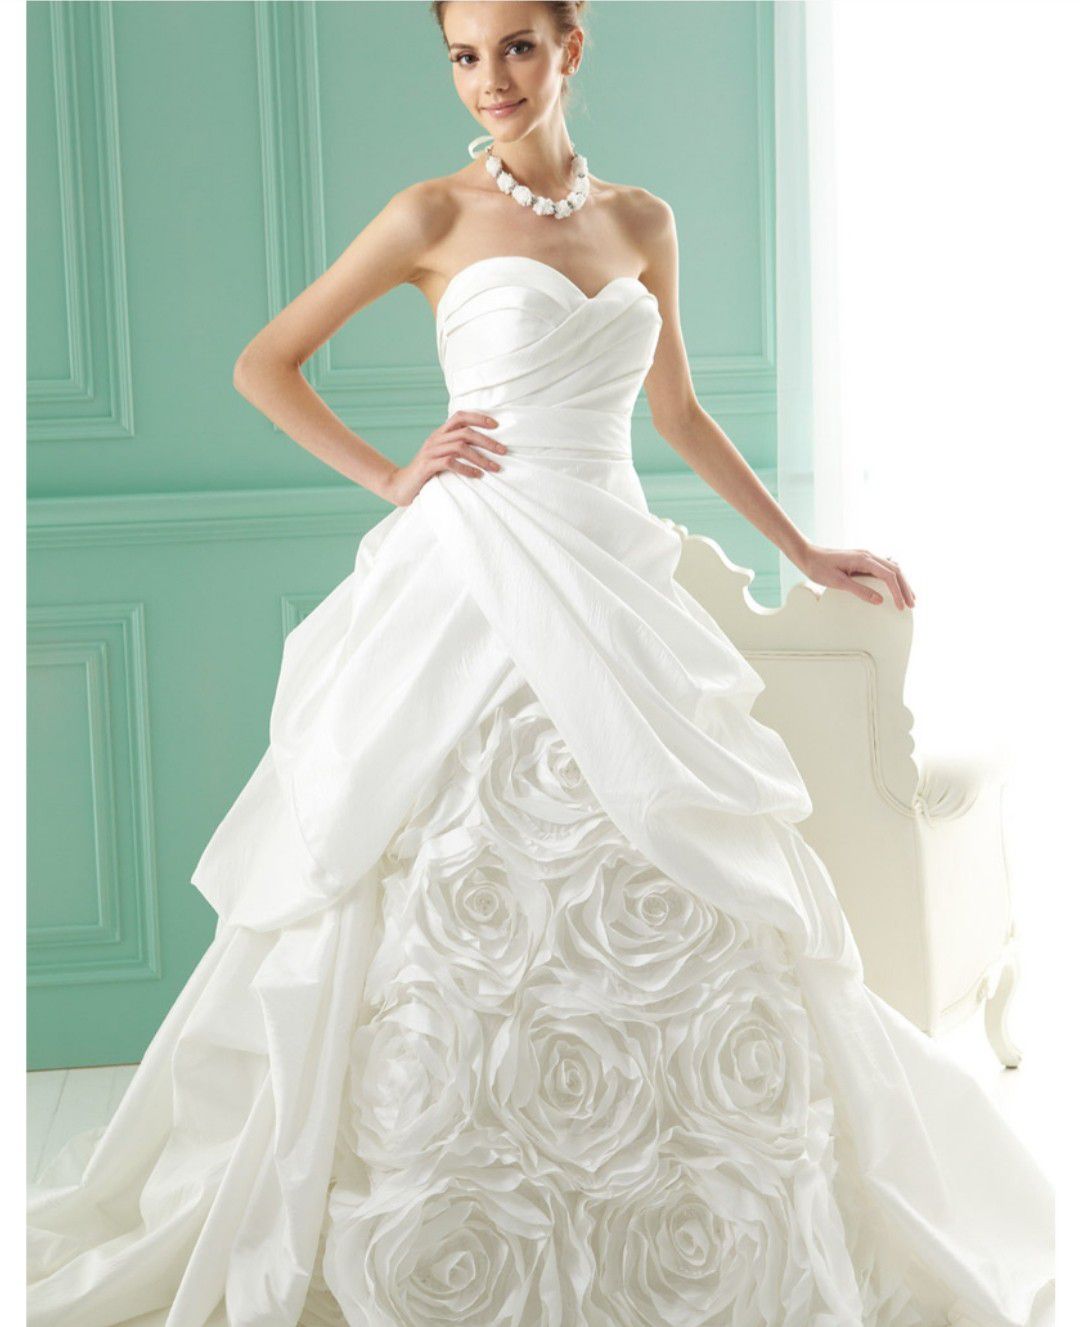 Nwt Jasmine wedding gown sz 6